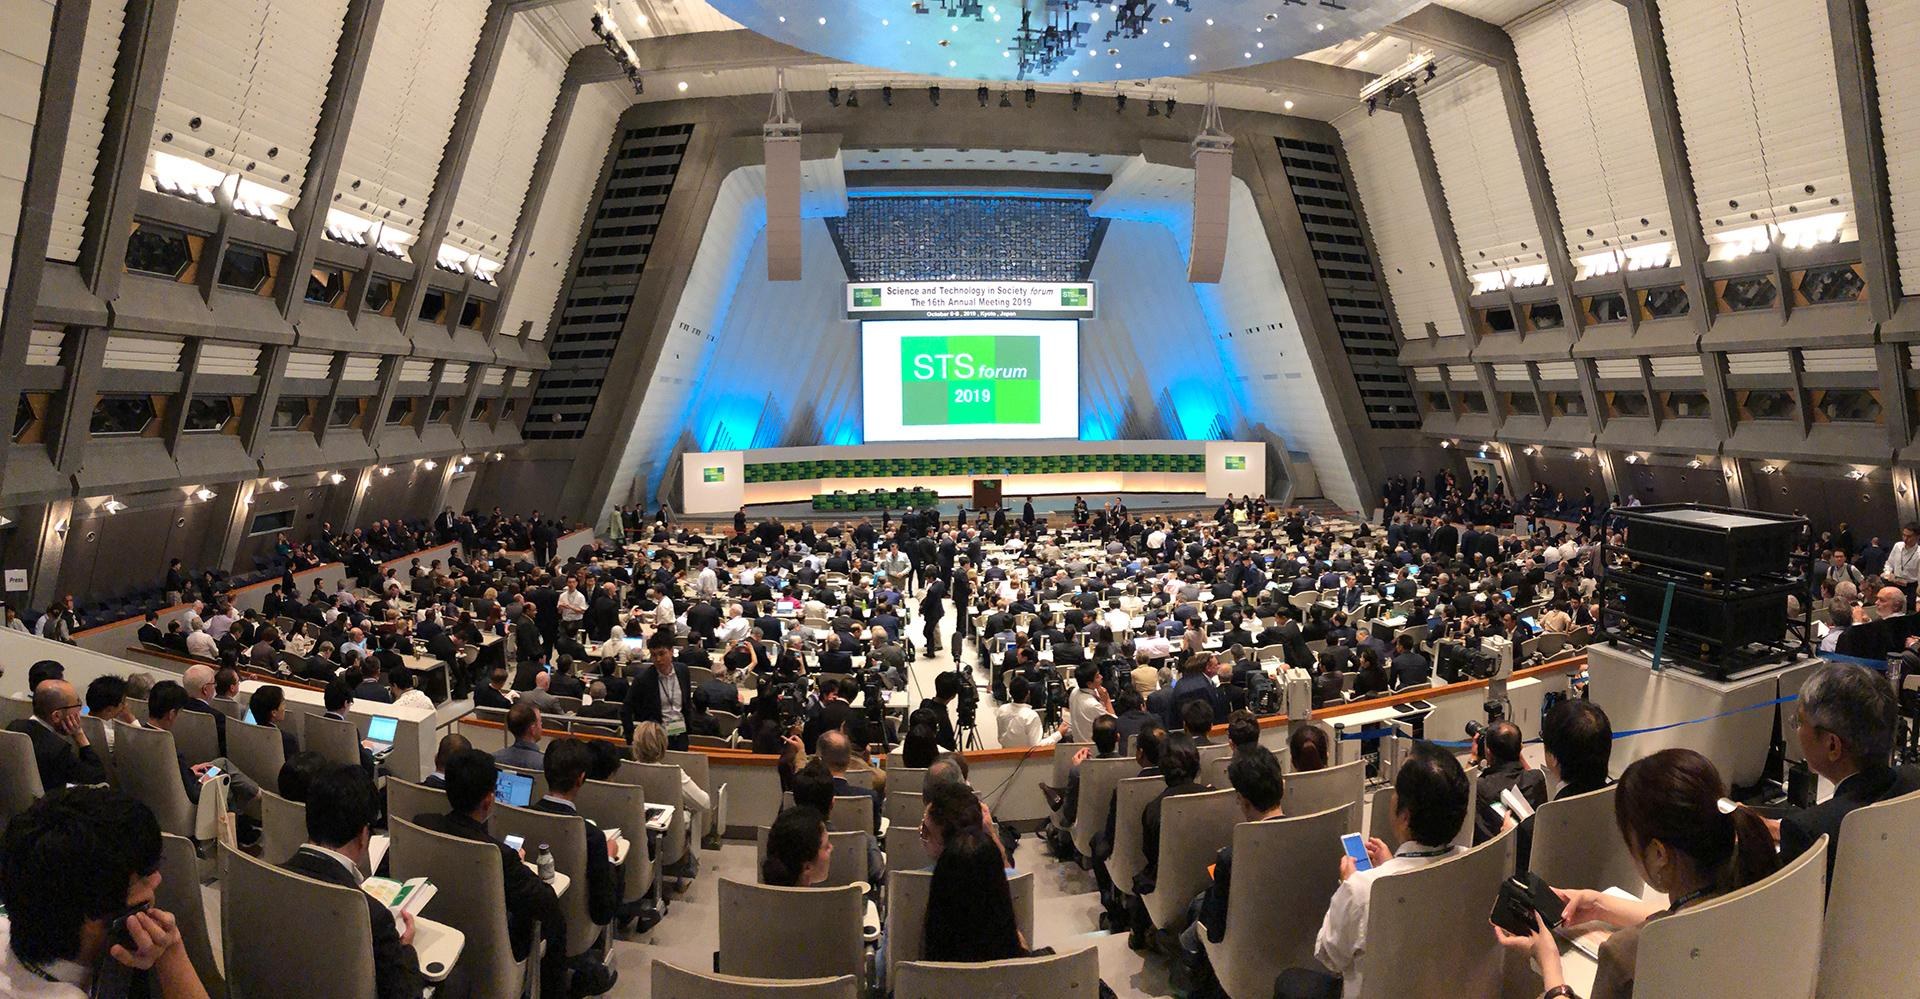 Das STS forum 2019 in Kyoto